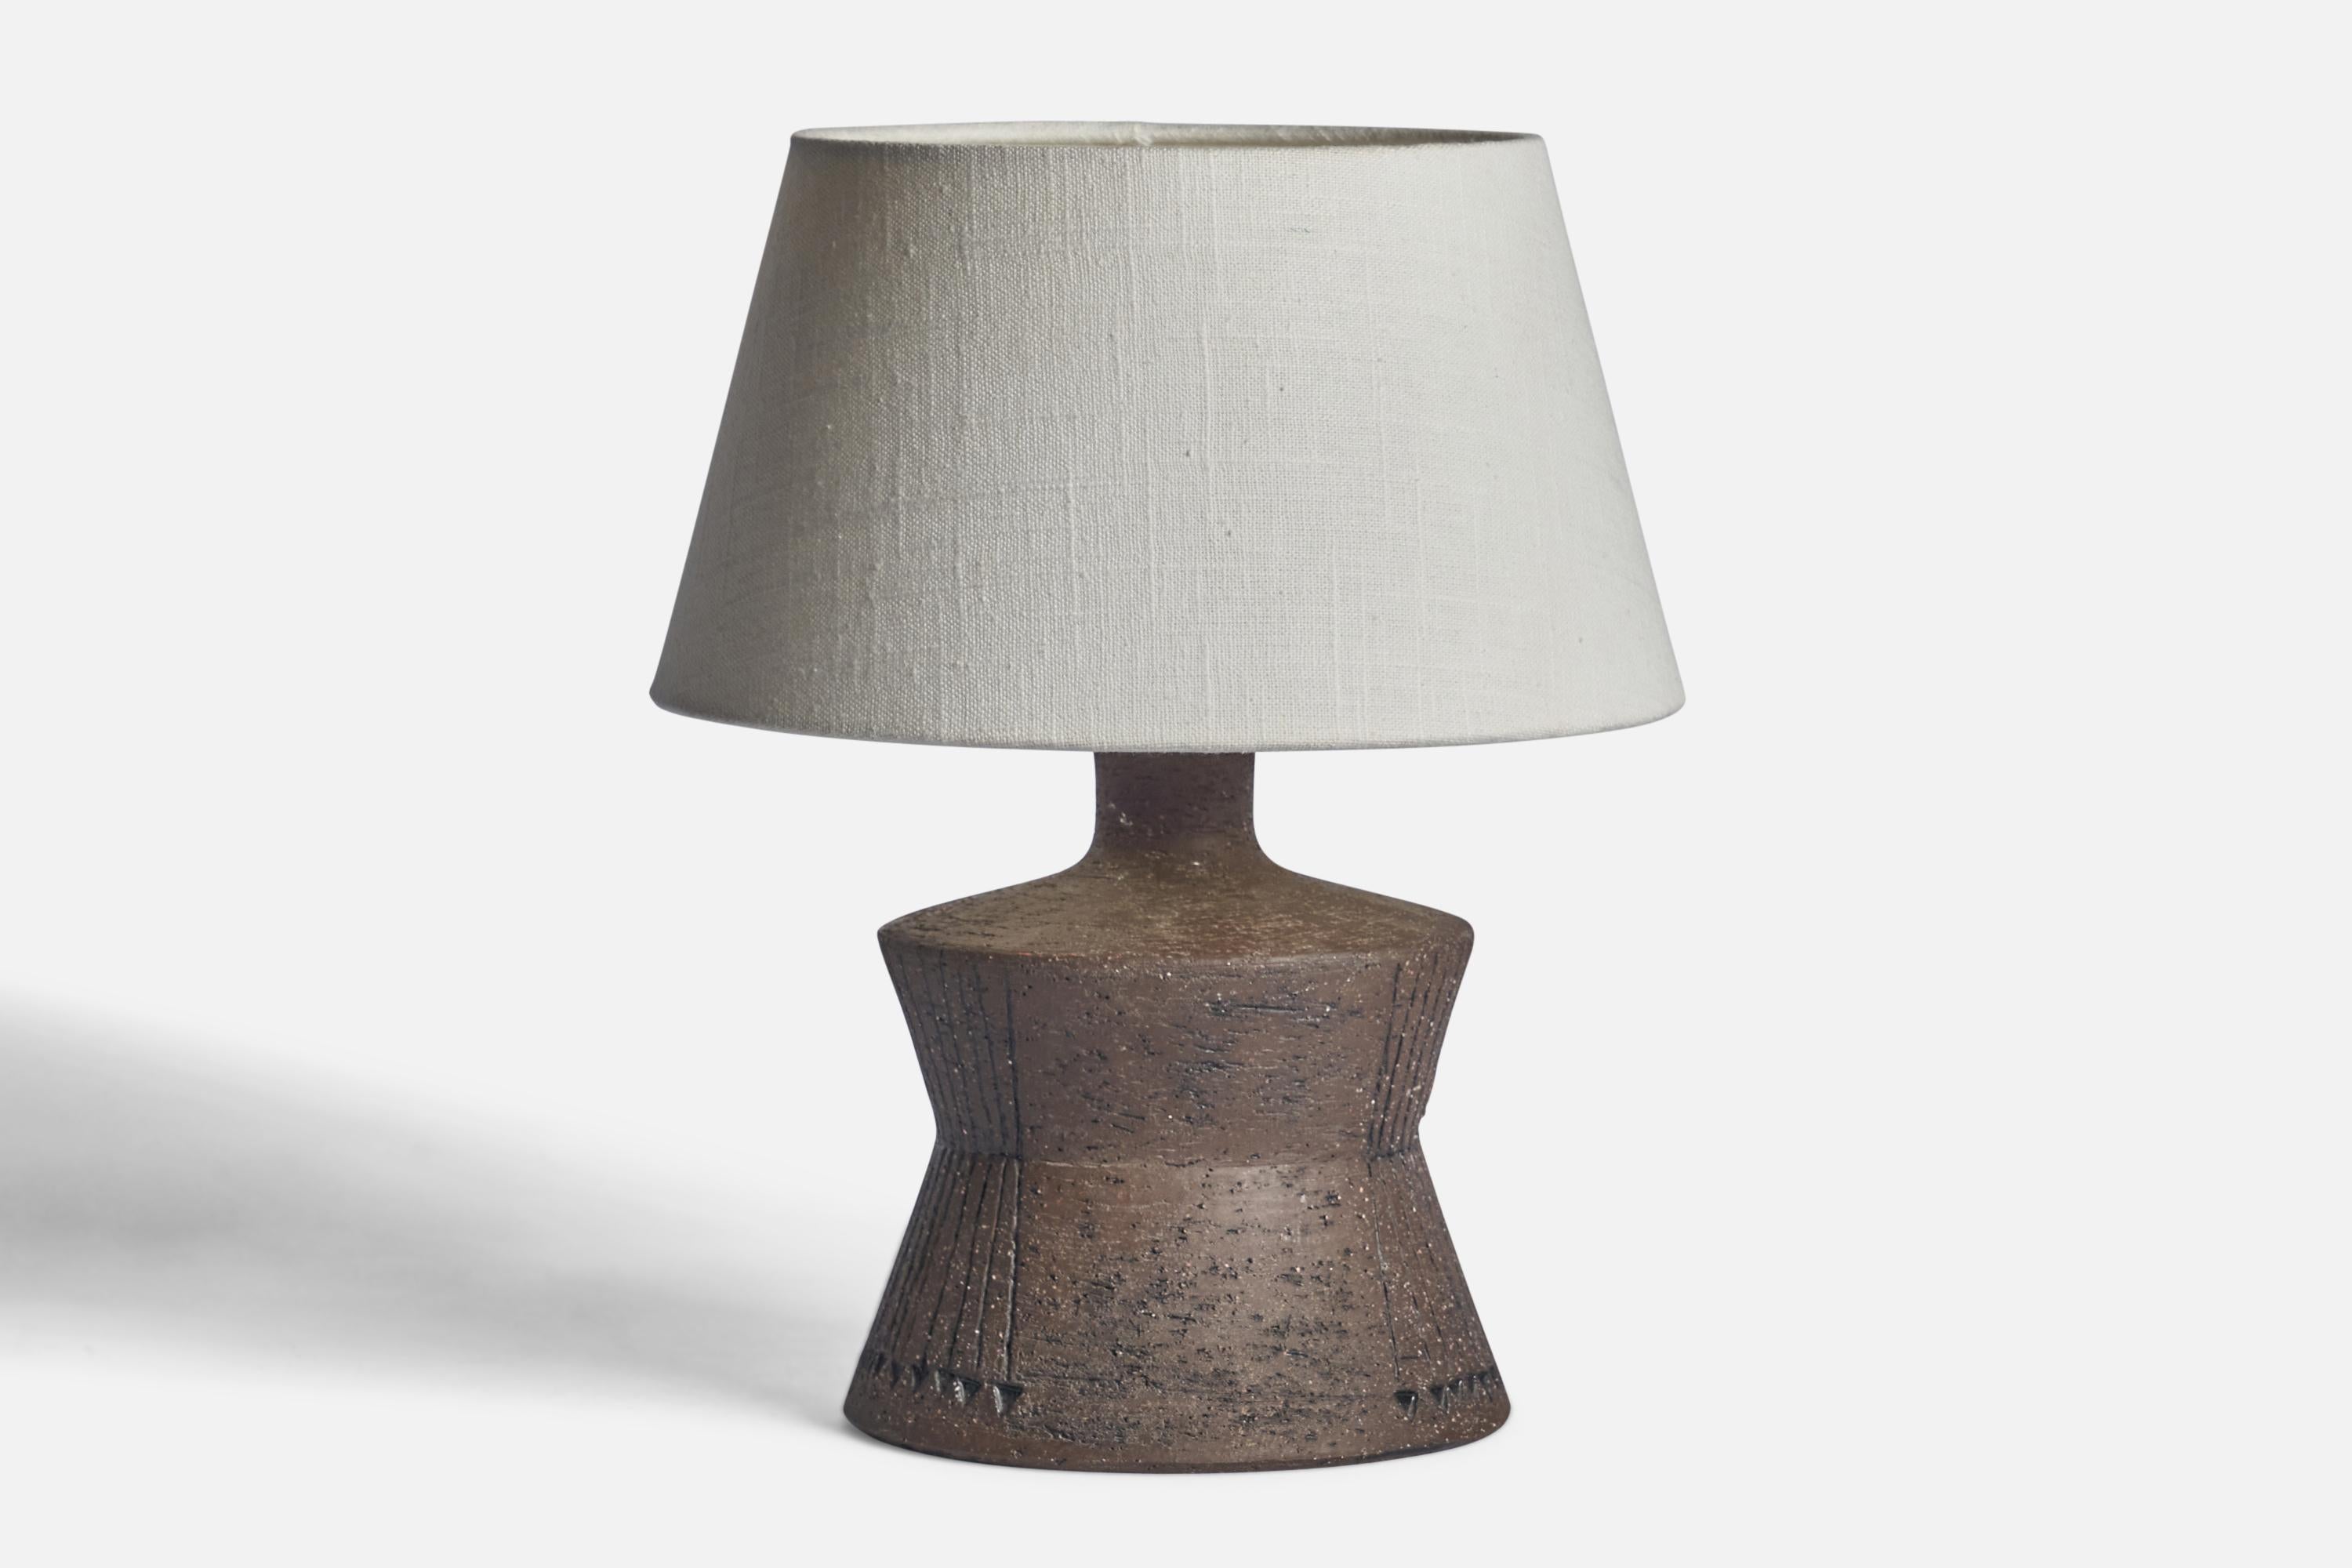 Lampe de table en grès incisé émaillé gris, conçue et produite en Suède, années 1970.

Dimensions de la lampe (pouces) : 9.25